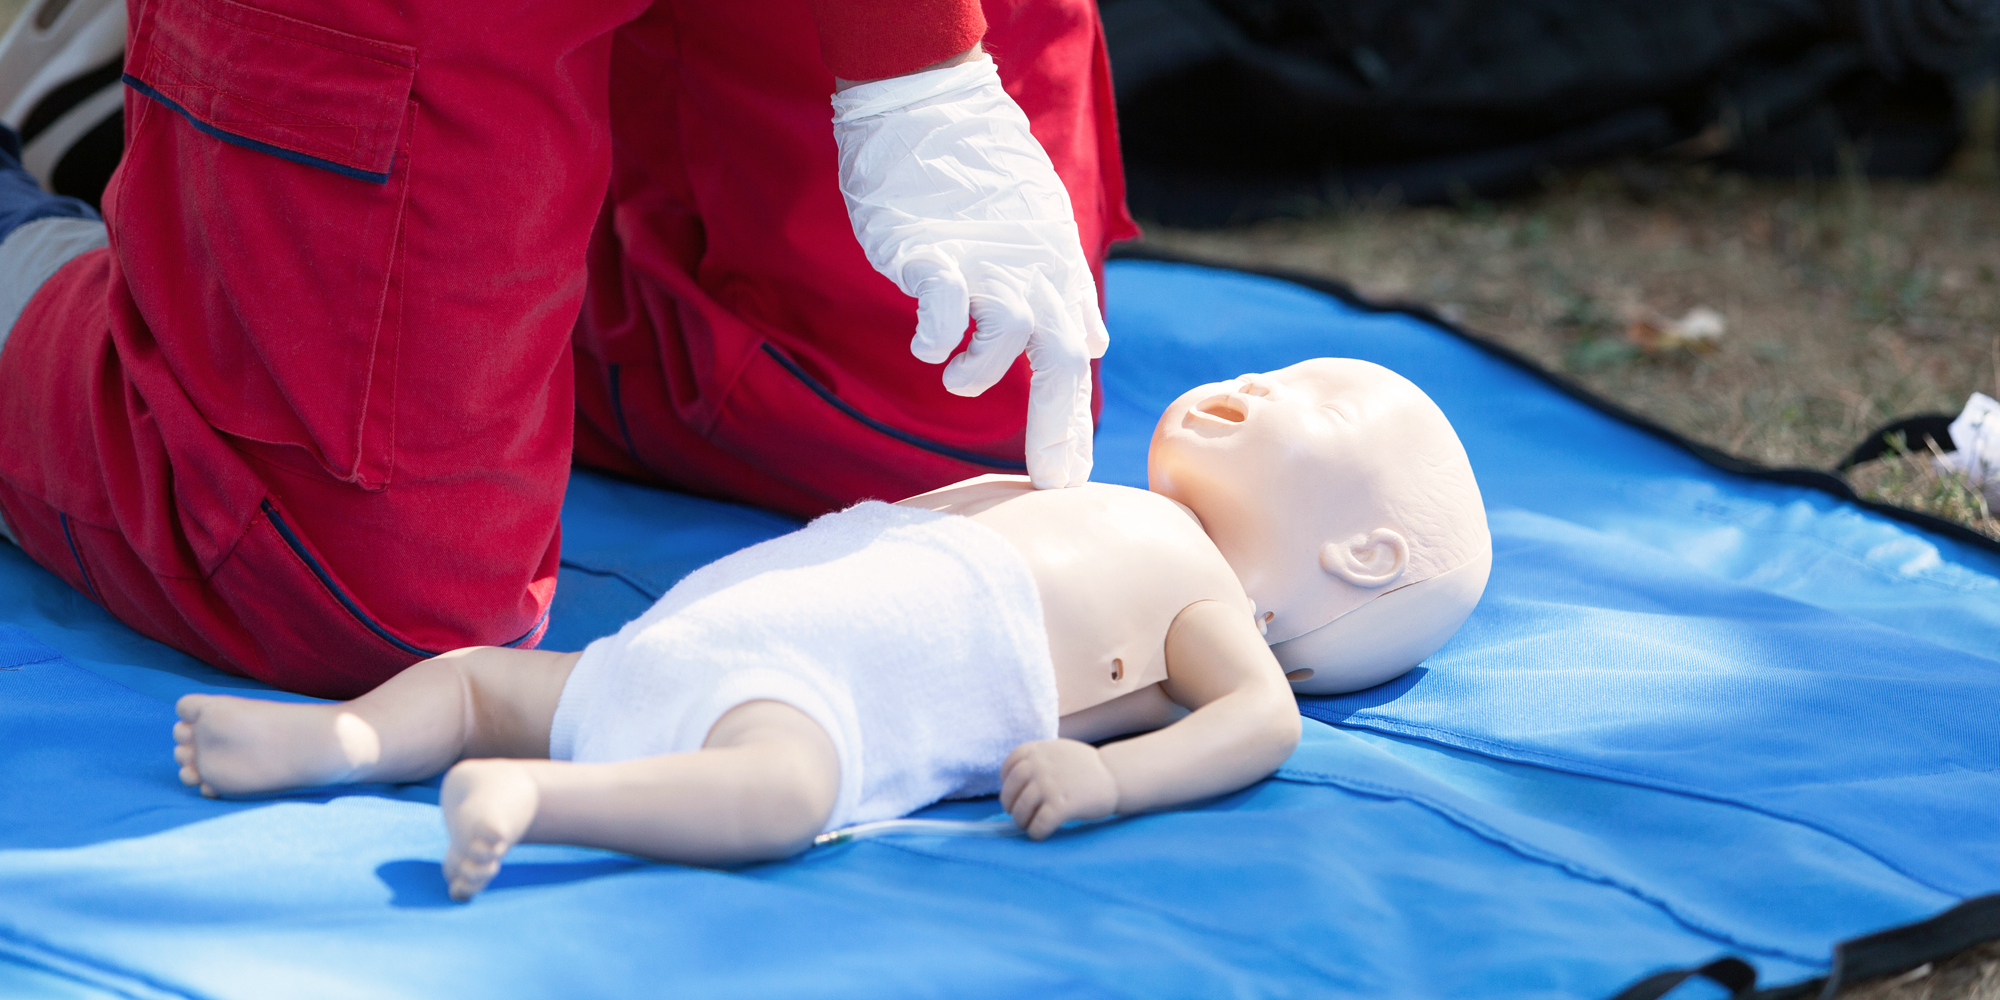 Førstehjælpskurser til babyer og børn i Gentofte hos FOF Nordsjælland